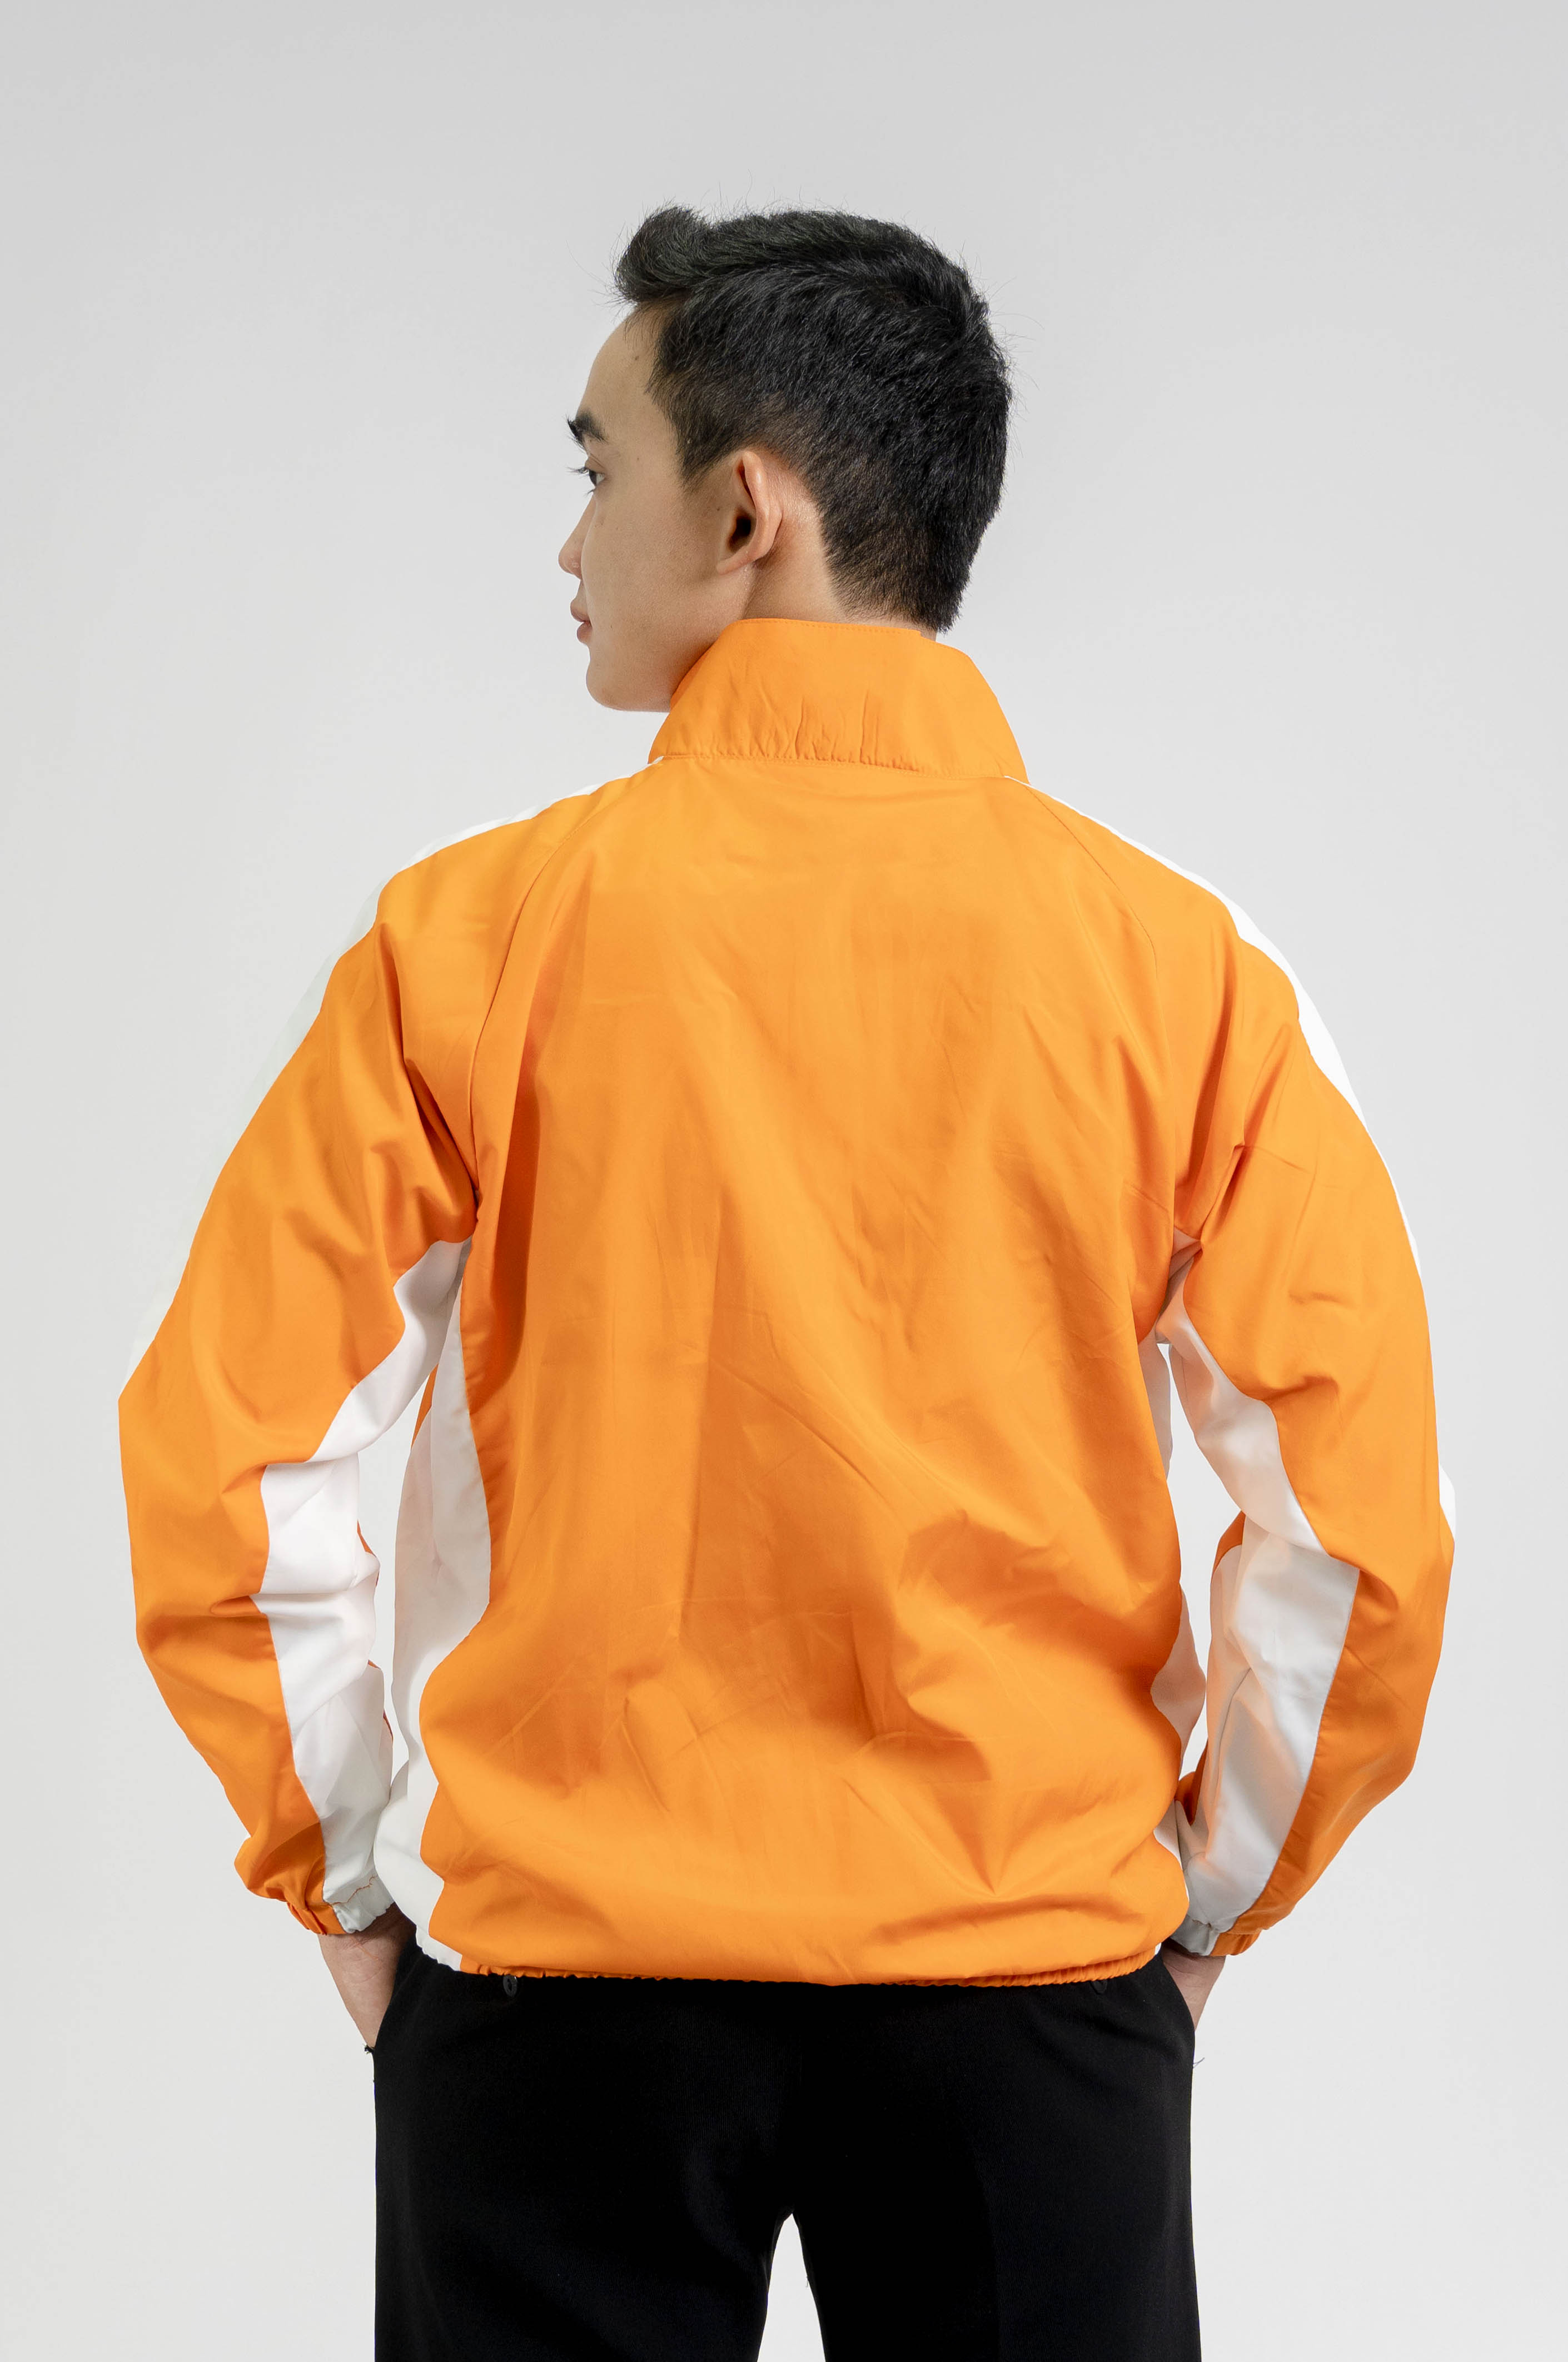 Mẫu áo khoác gió màu cam viền trắng